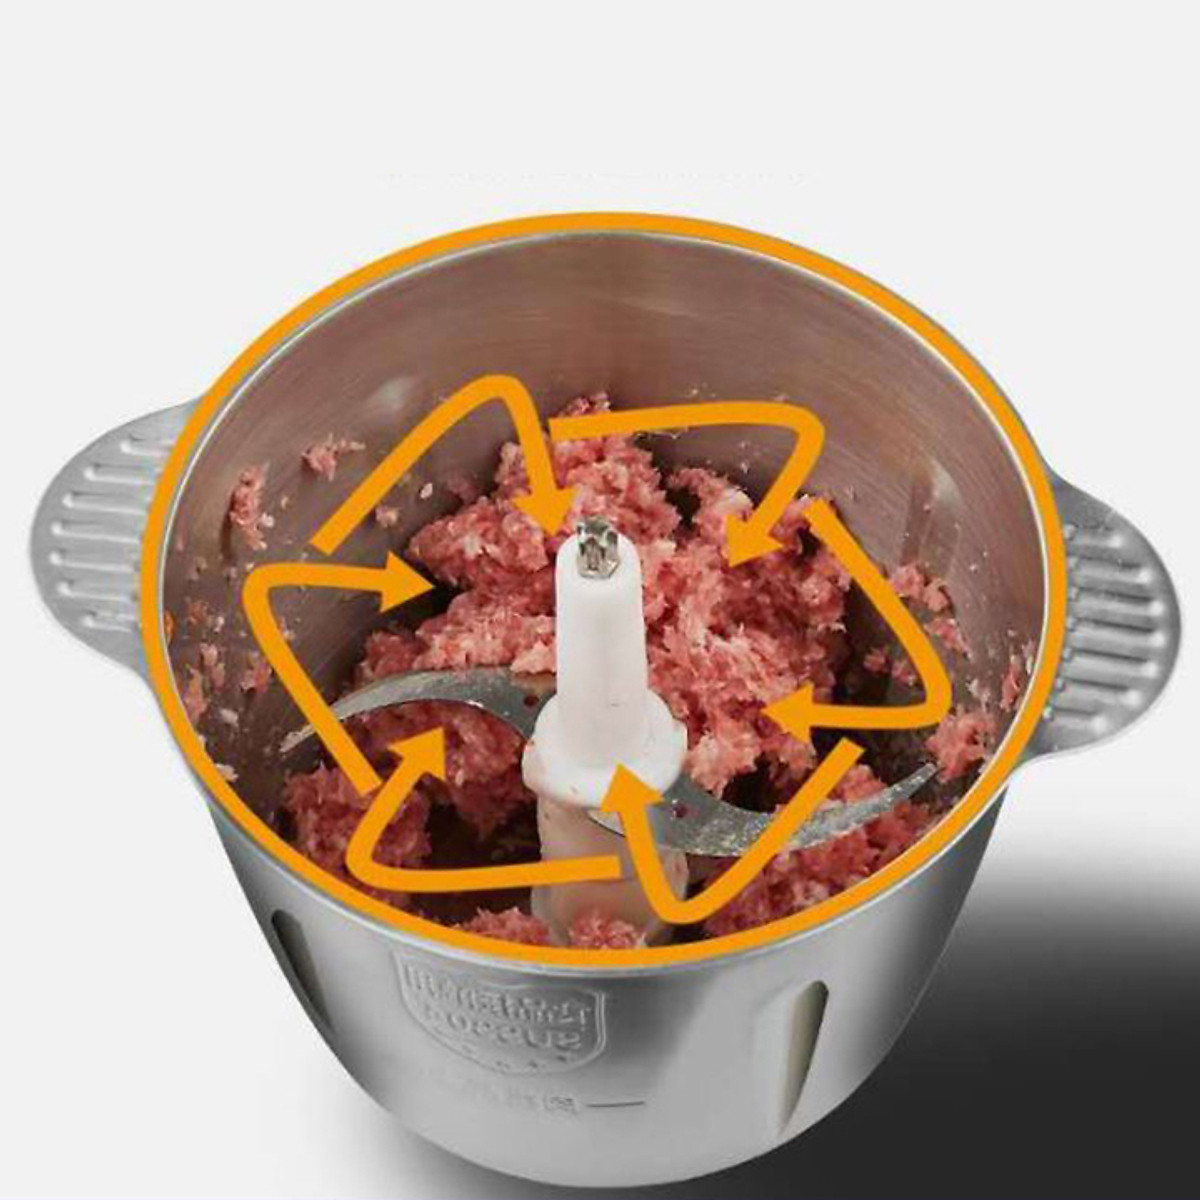 Máy xay thịt cối inox dung tích 2L , máy xay đa năng 4 lưỡi có thể dùng xay hành tỏi, xay tiêu hoặc các loại thực phẩm khác